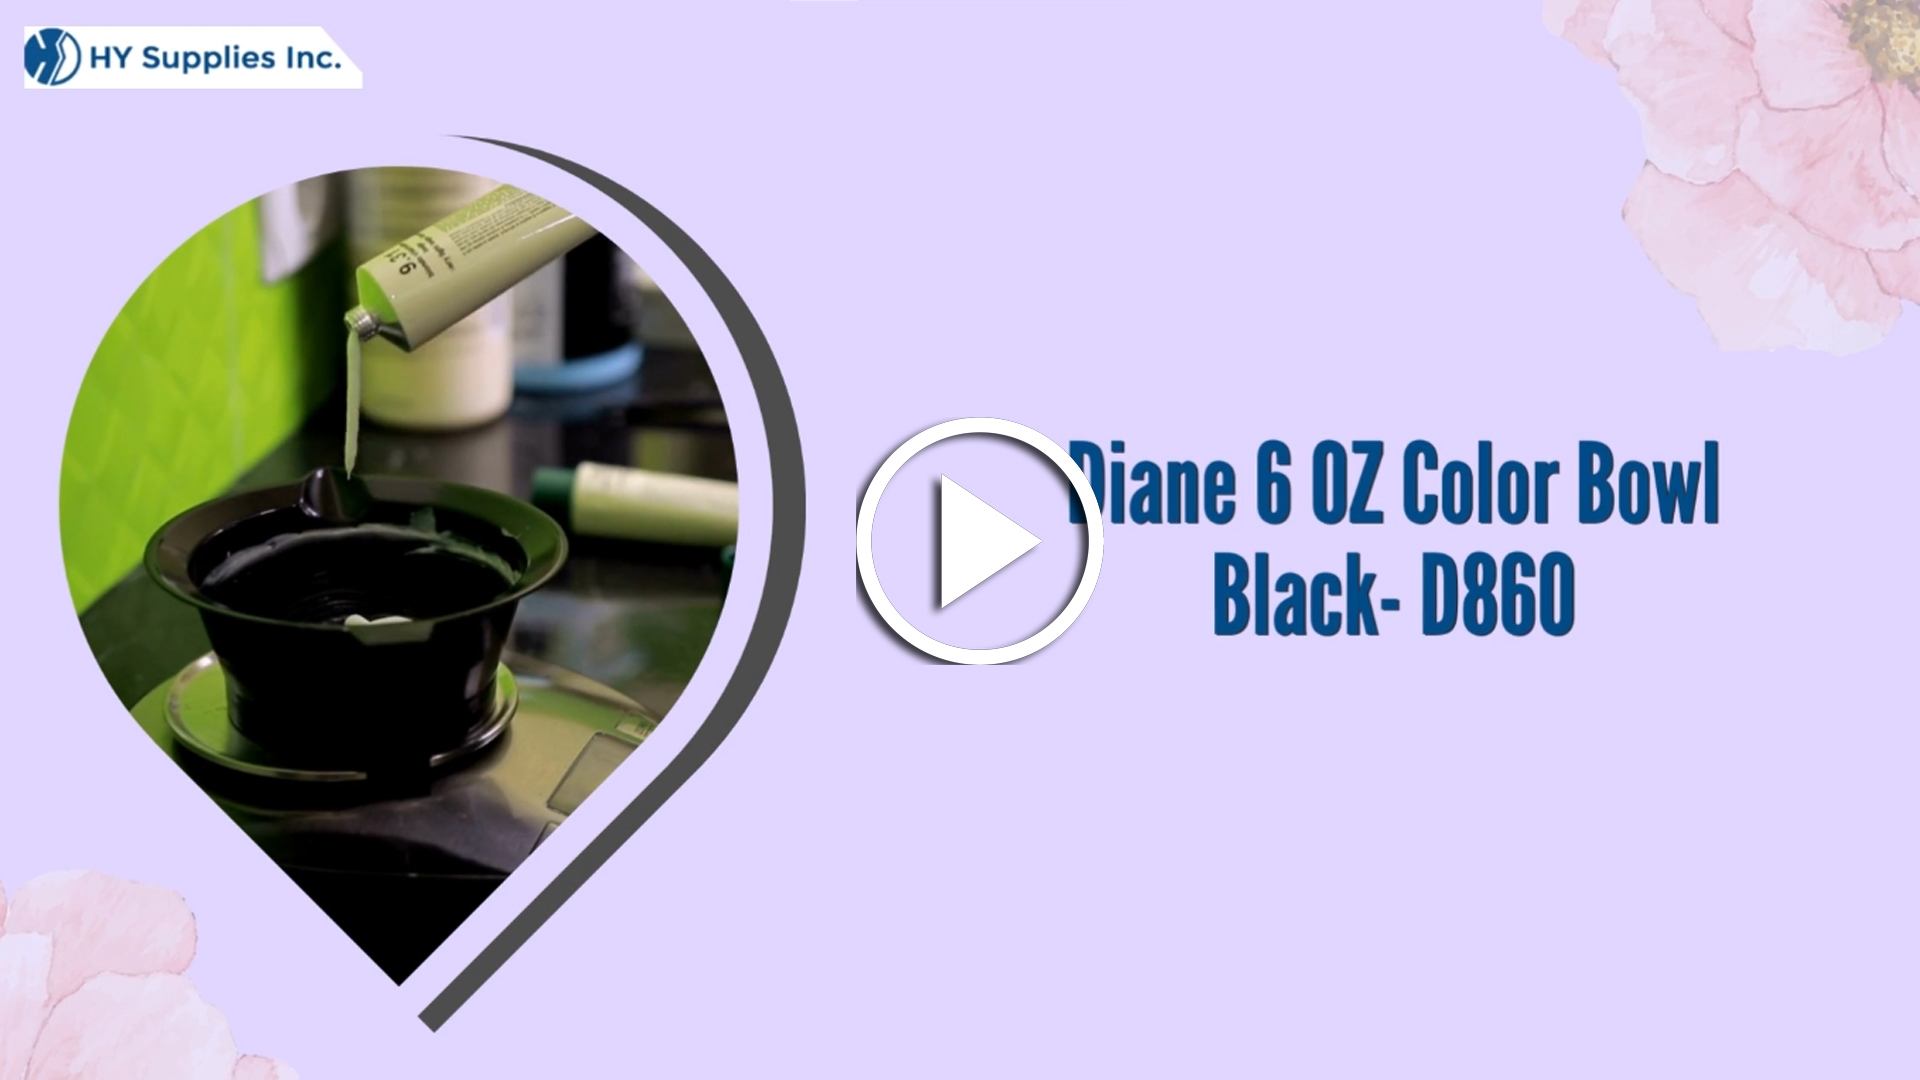 Diane 6 OZ Color Bowl Black- D860